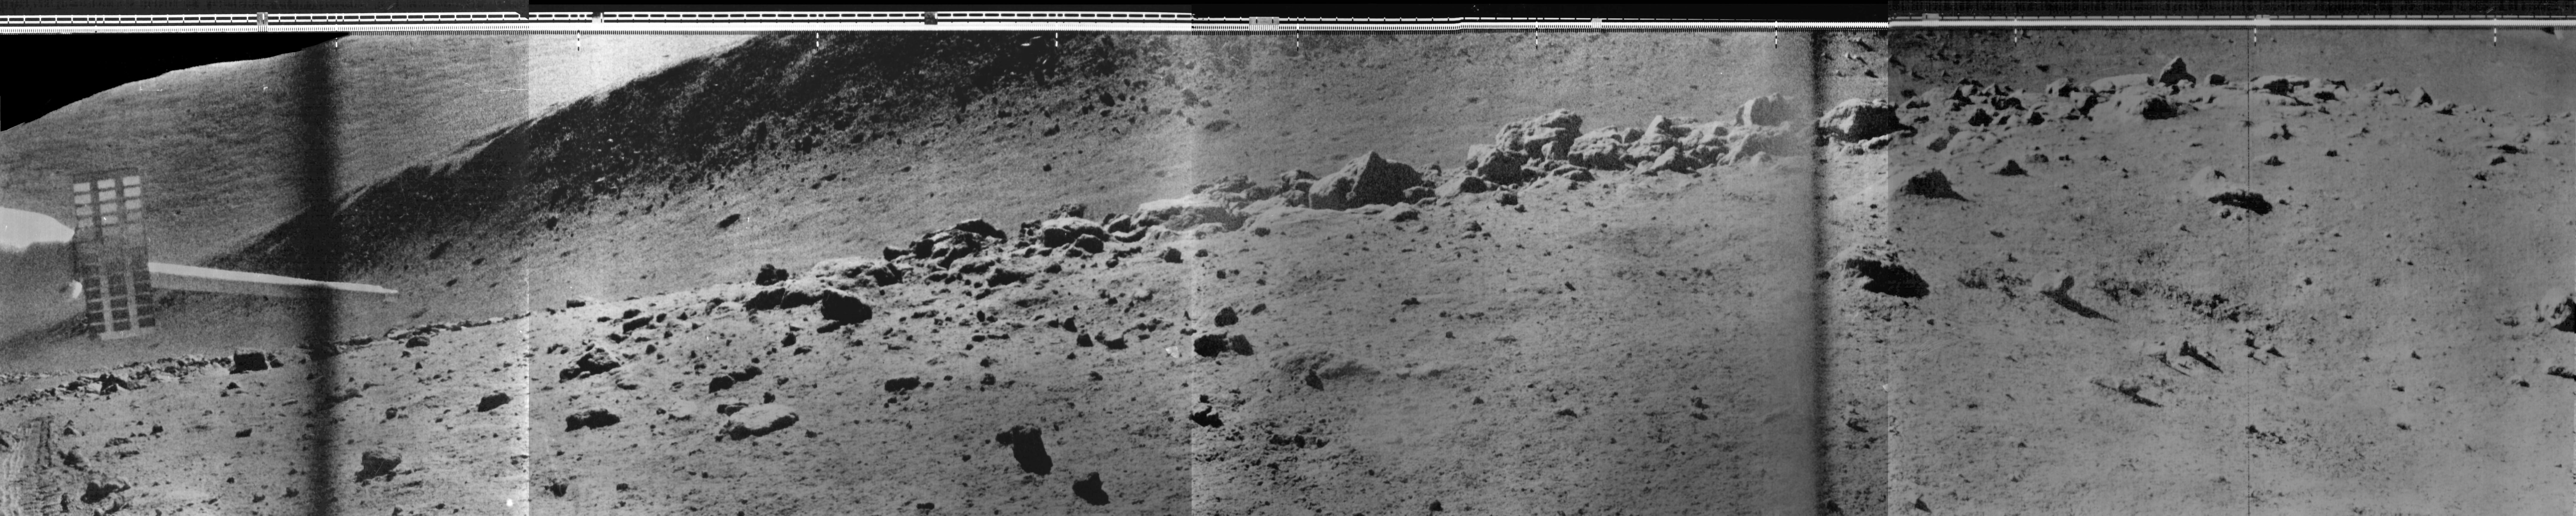 Lunokhod 2 Panorama D04_S11_P09m